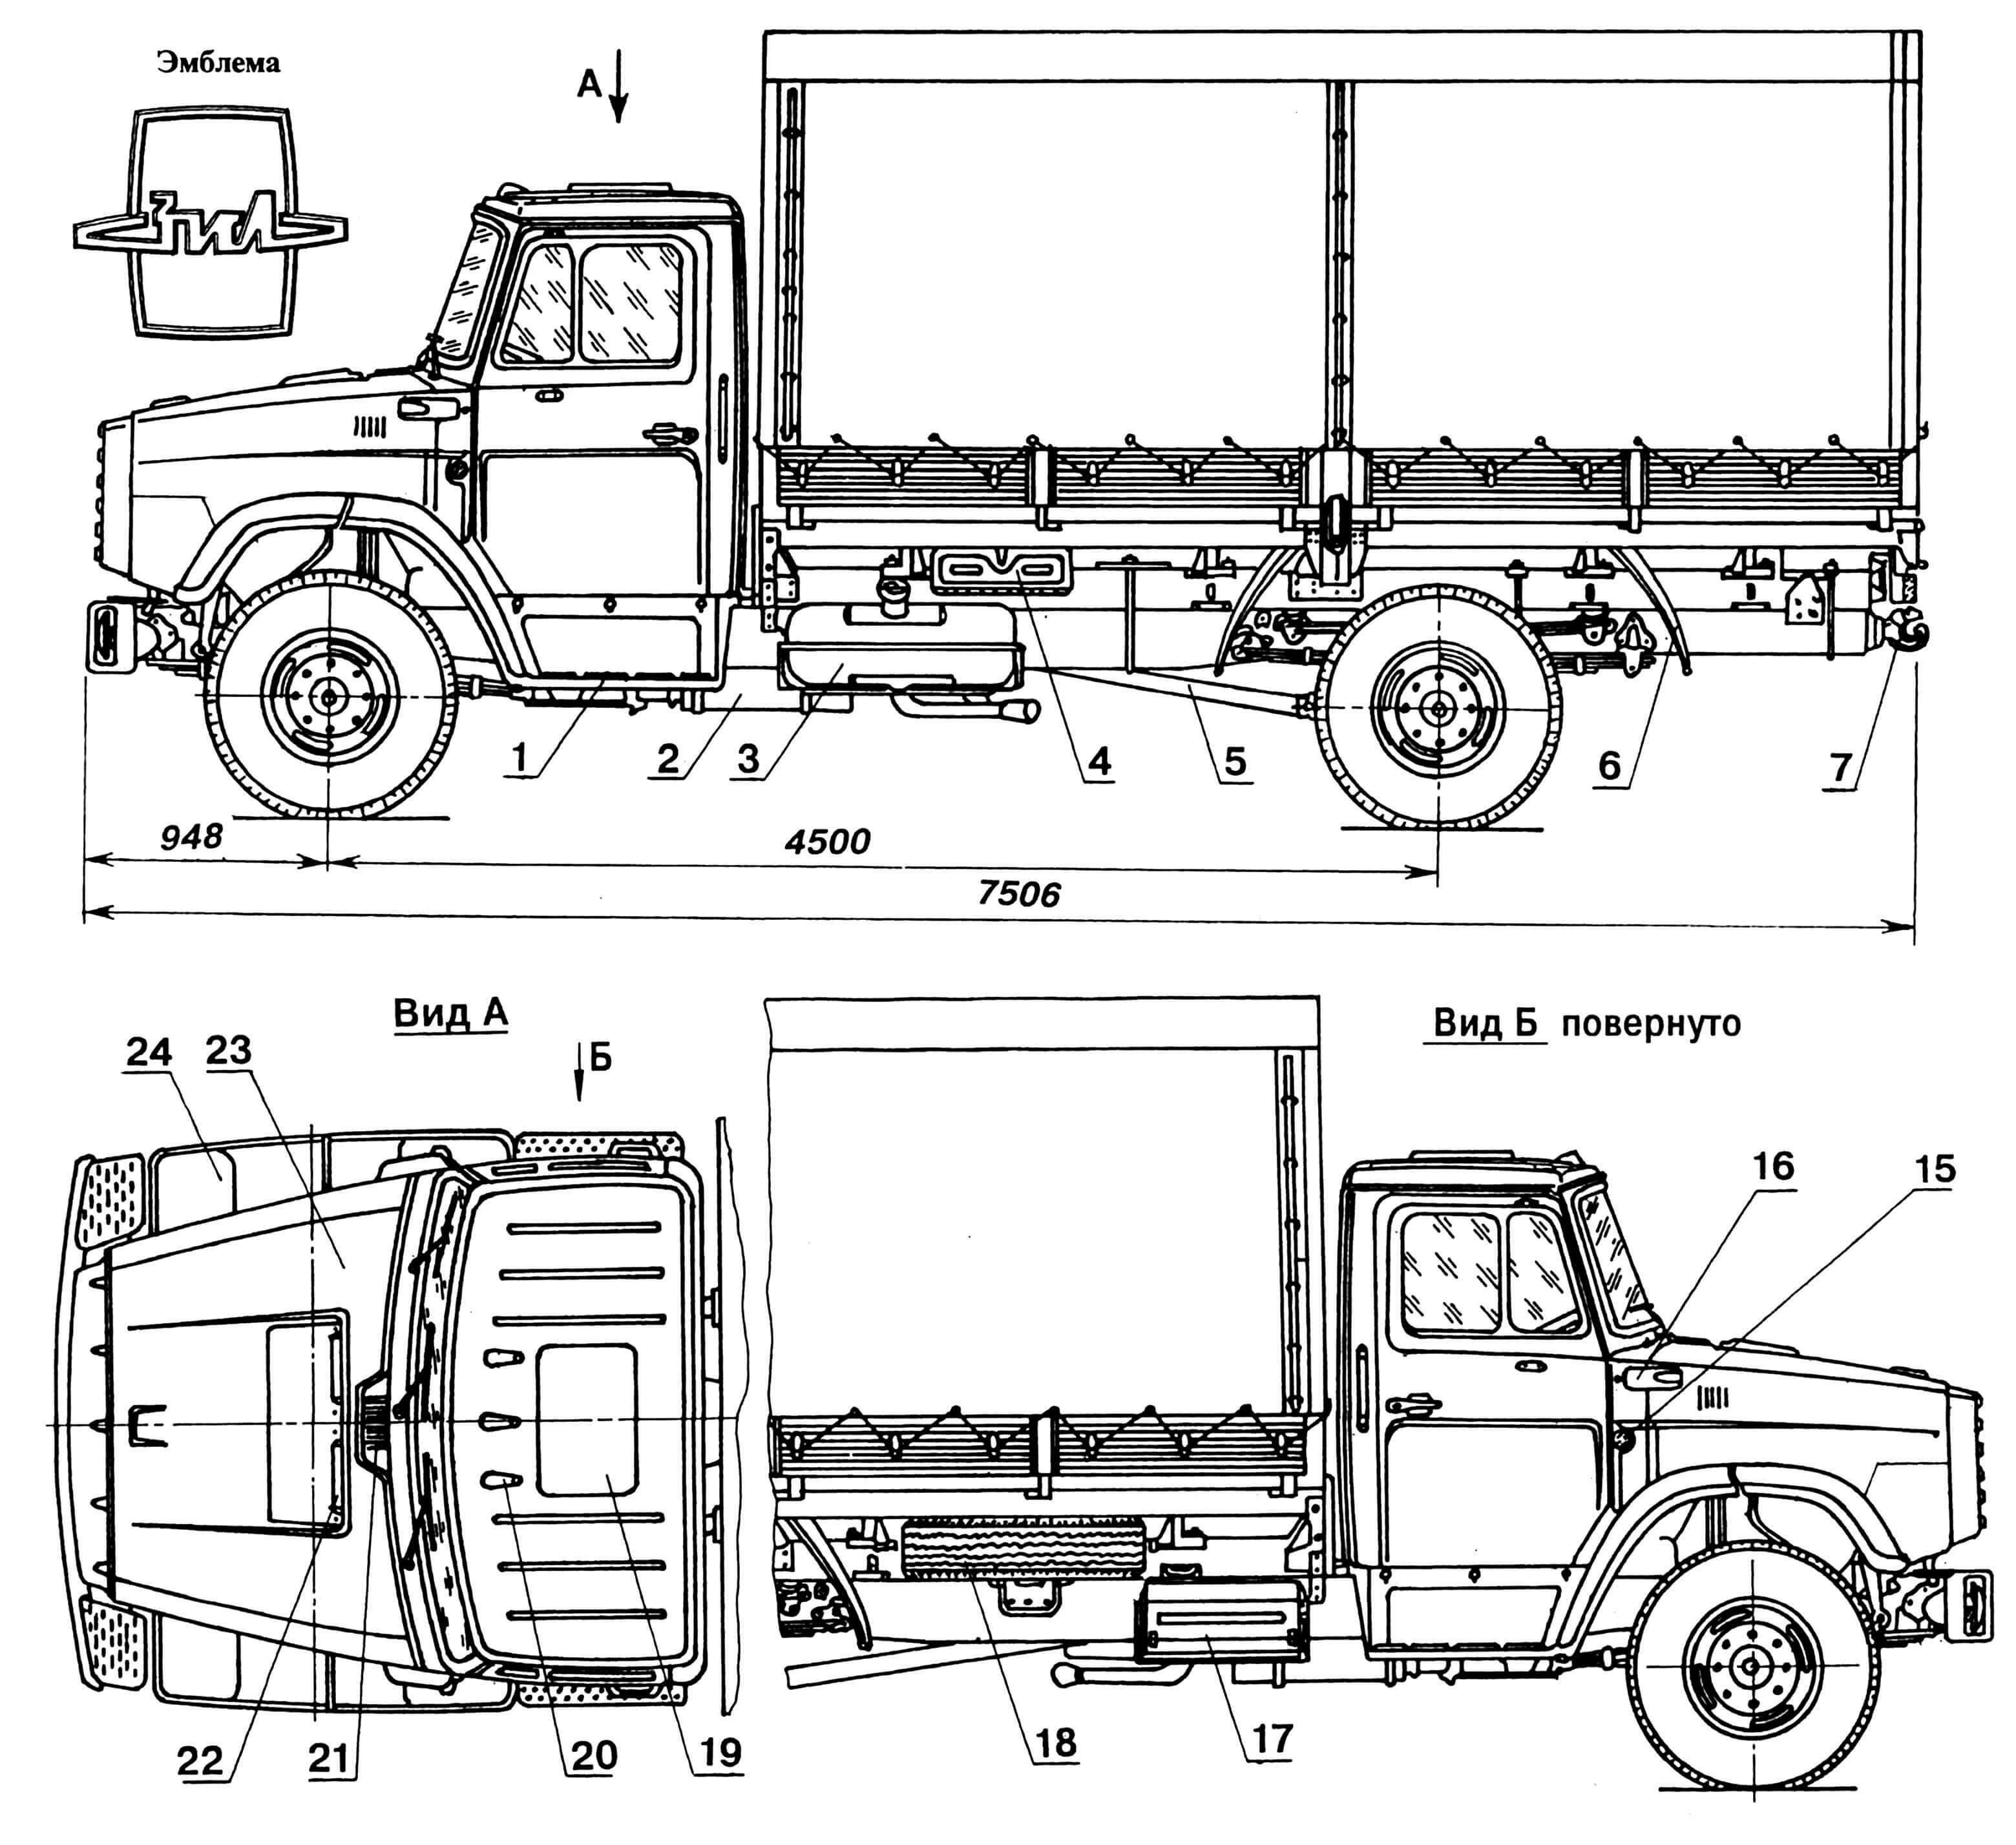 Характеристики, обслуживание и ремонт двигателя зил-645